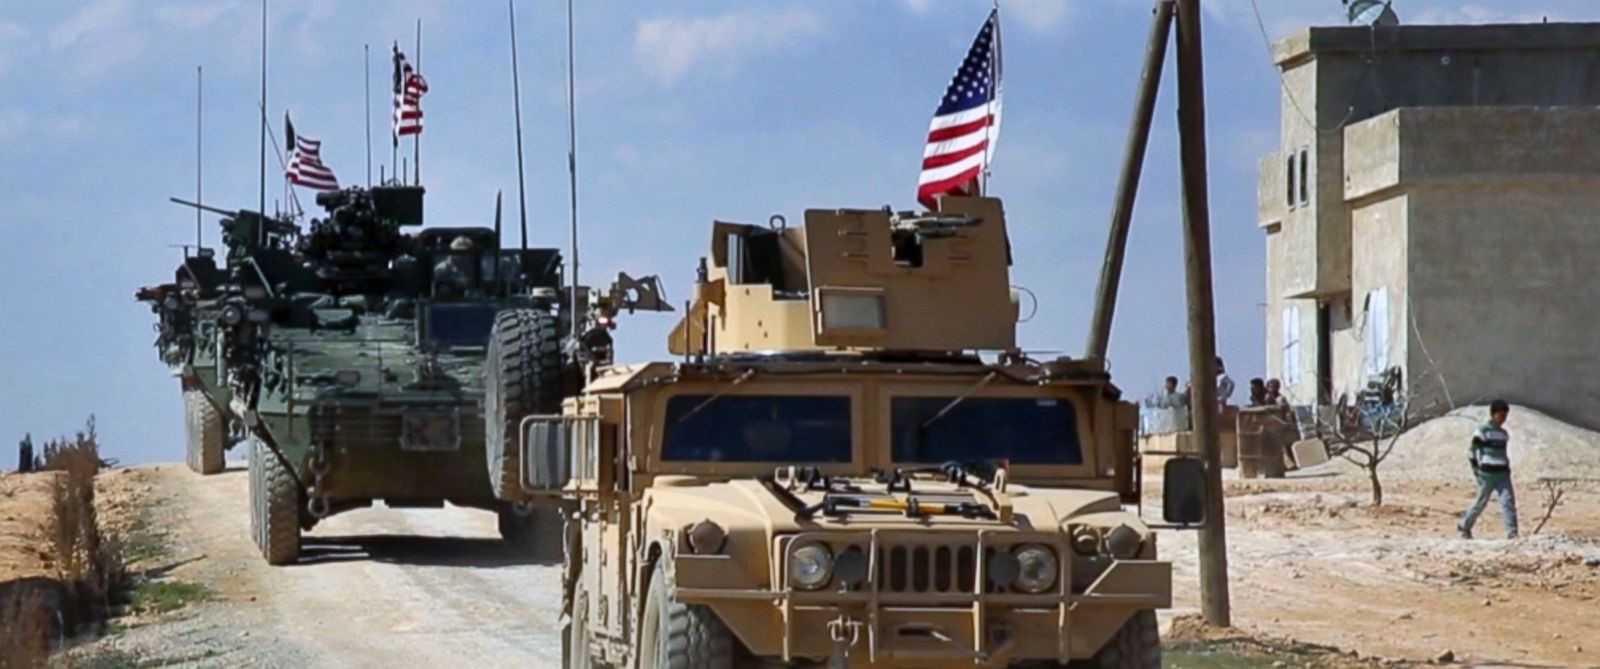 Συρία: «Έρχεται» η μάχη της Μαντζίμπ ανάμεσα σε ΗΠΑ και Τουρκία – Μεταφορά οχημάτων με βαρύ οπλισμό και τεθωρακισμένα